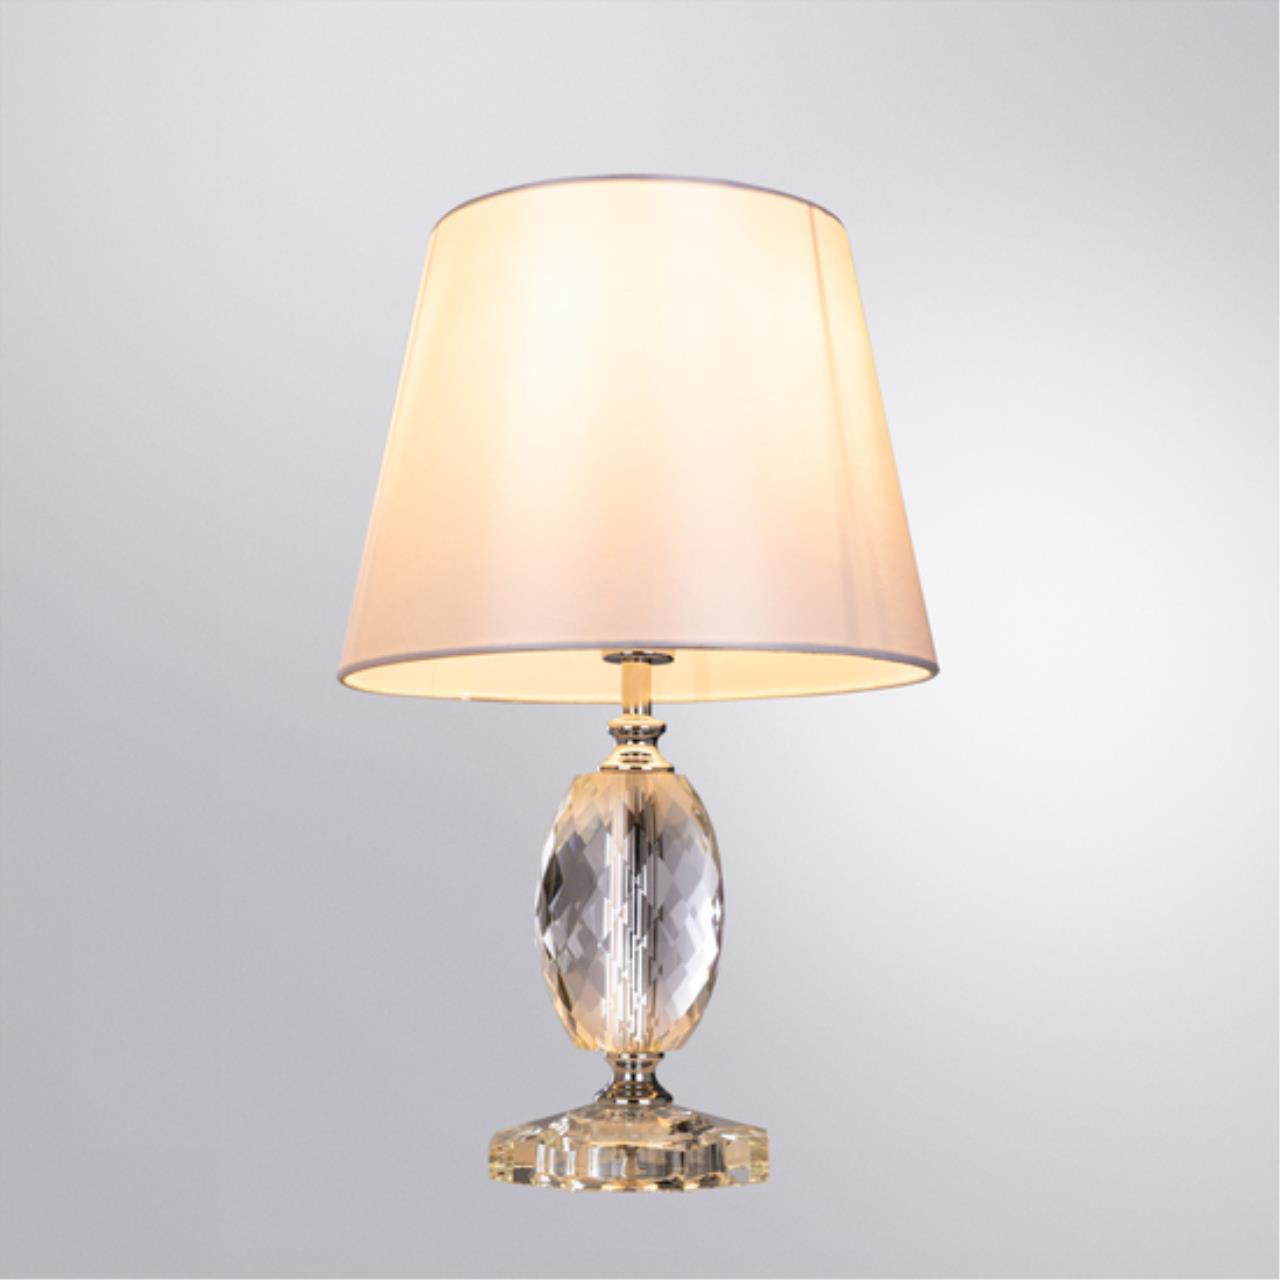 Интерьерная настольная лампа Arte lamp A4019LT-1CC СВЕТИЛЬНИК НАСТОЛЬНЫЙ